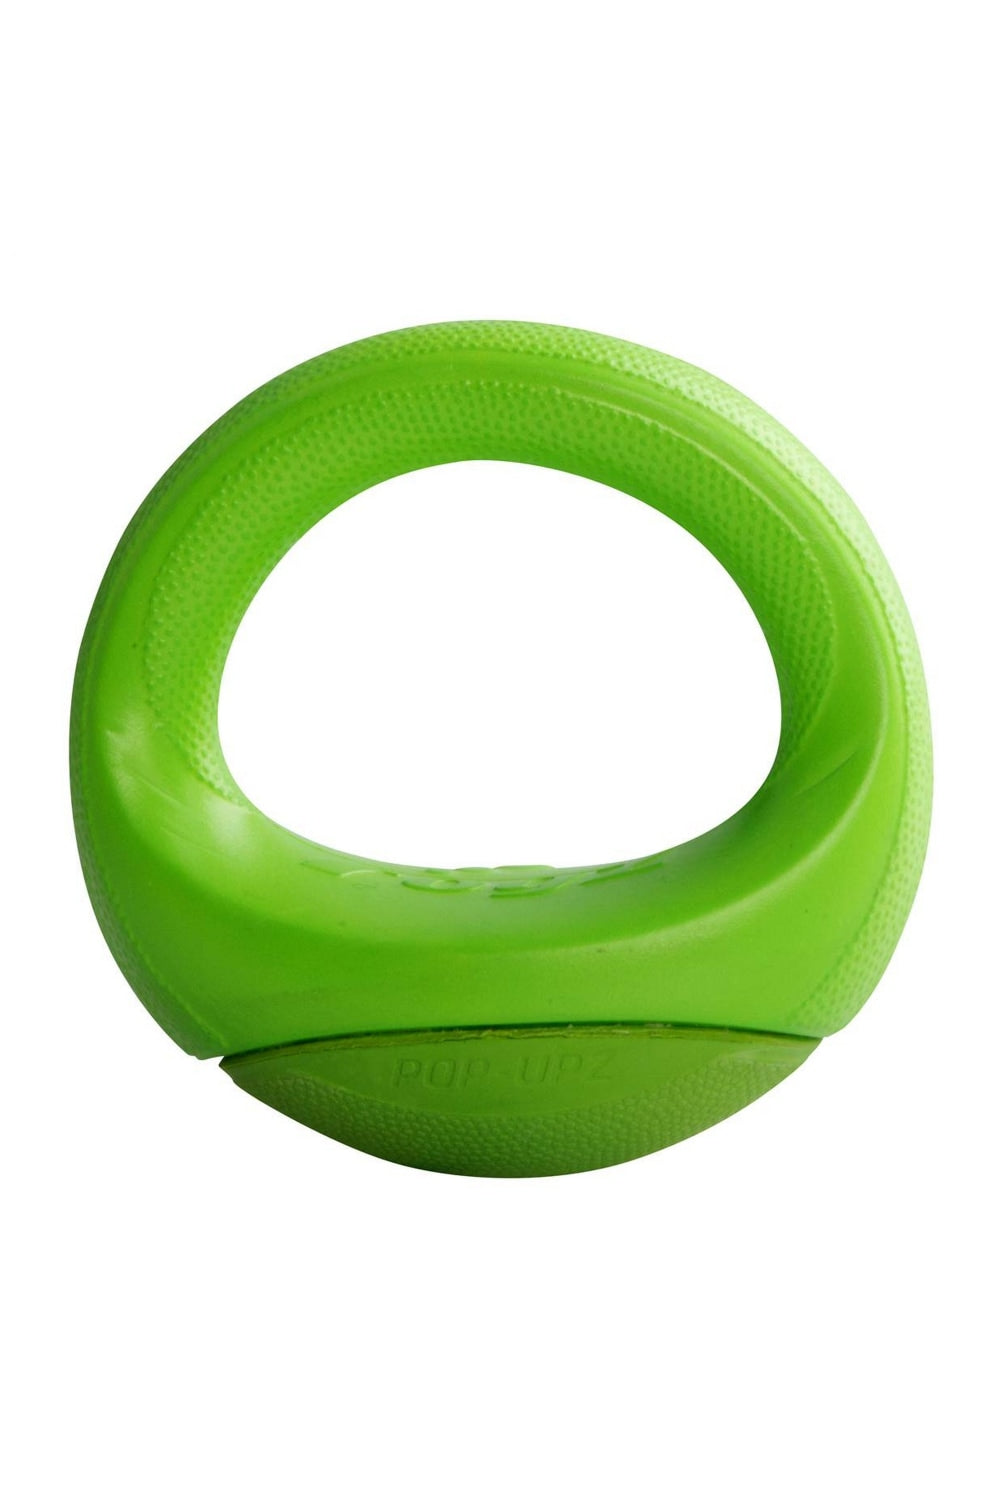 Rogz Pop-Upz Dog Toy (Lime Green) (Medium)